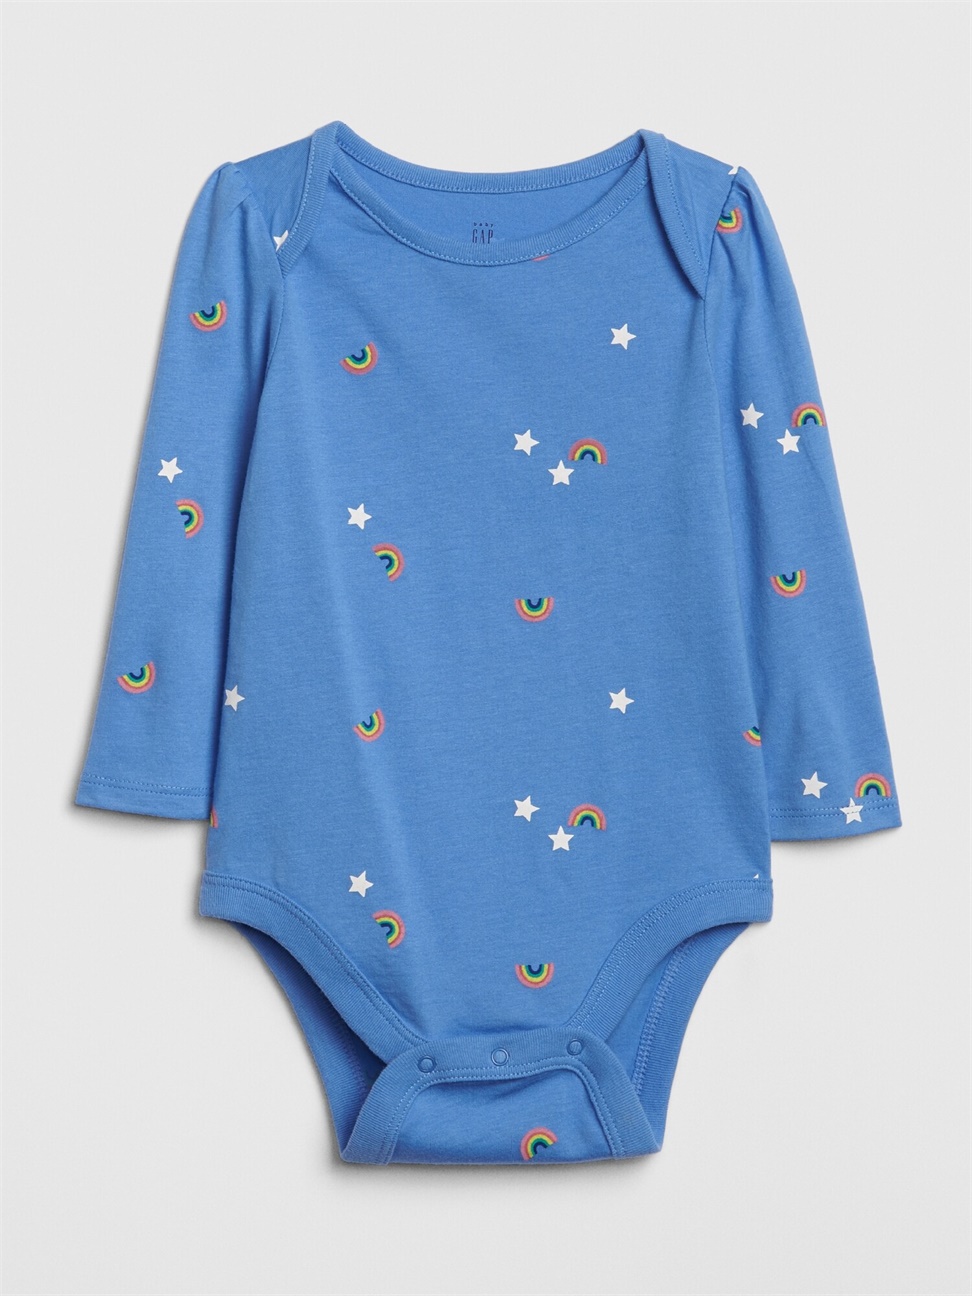 嬰兒裝|柔軟長袖圓領包屁衣-摩爾藍色